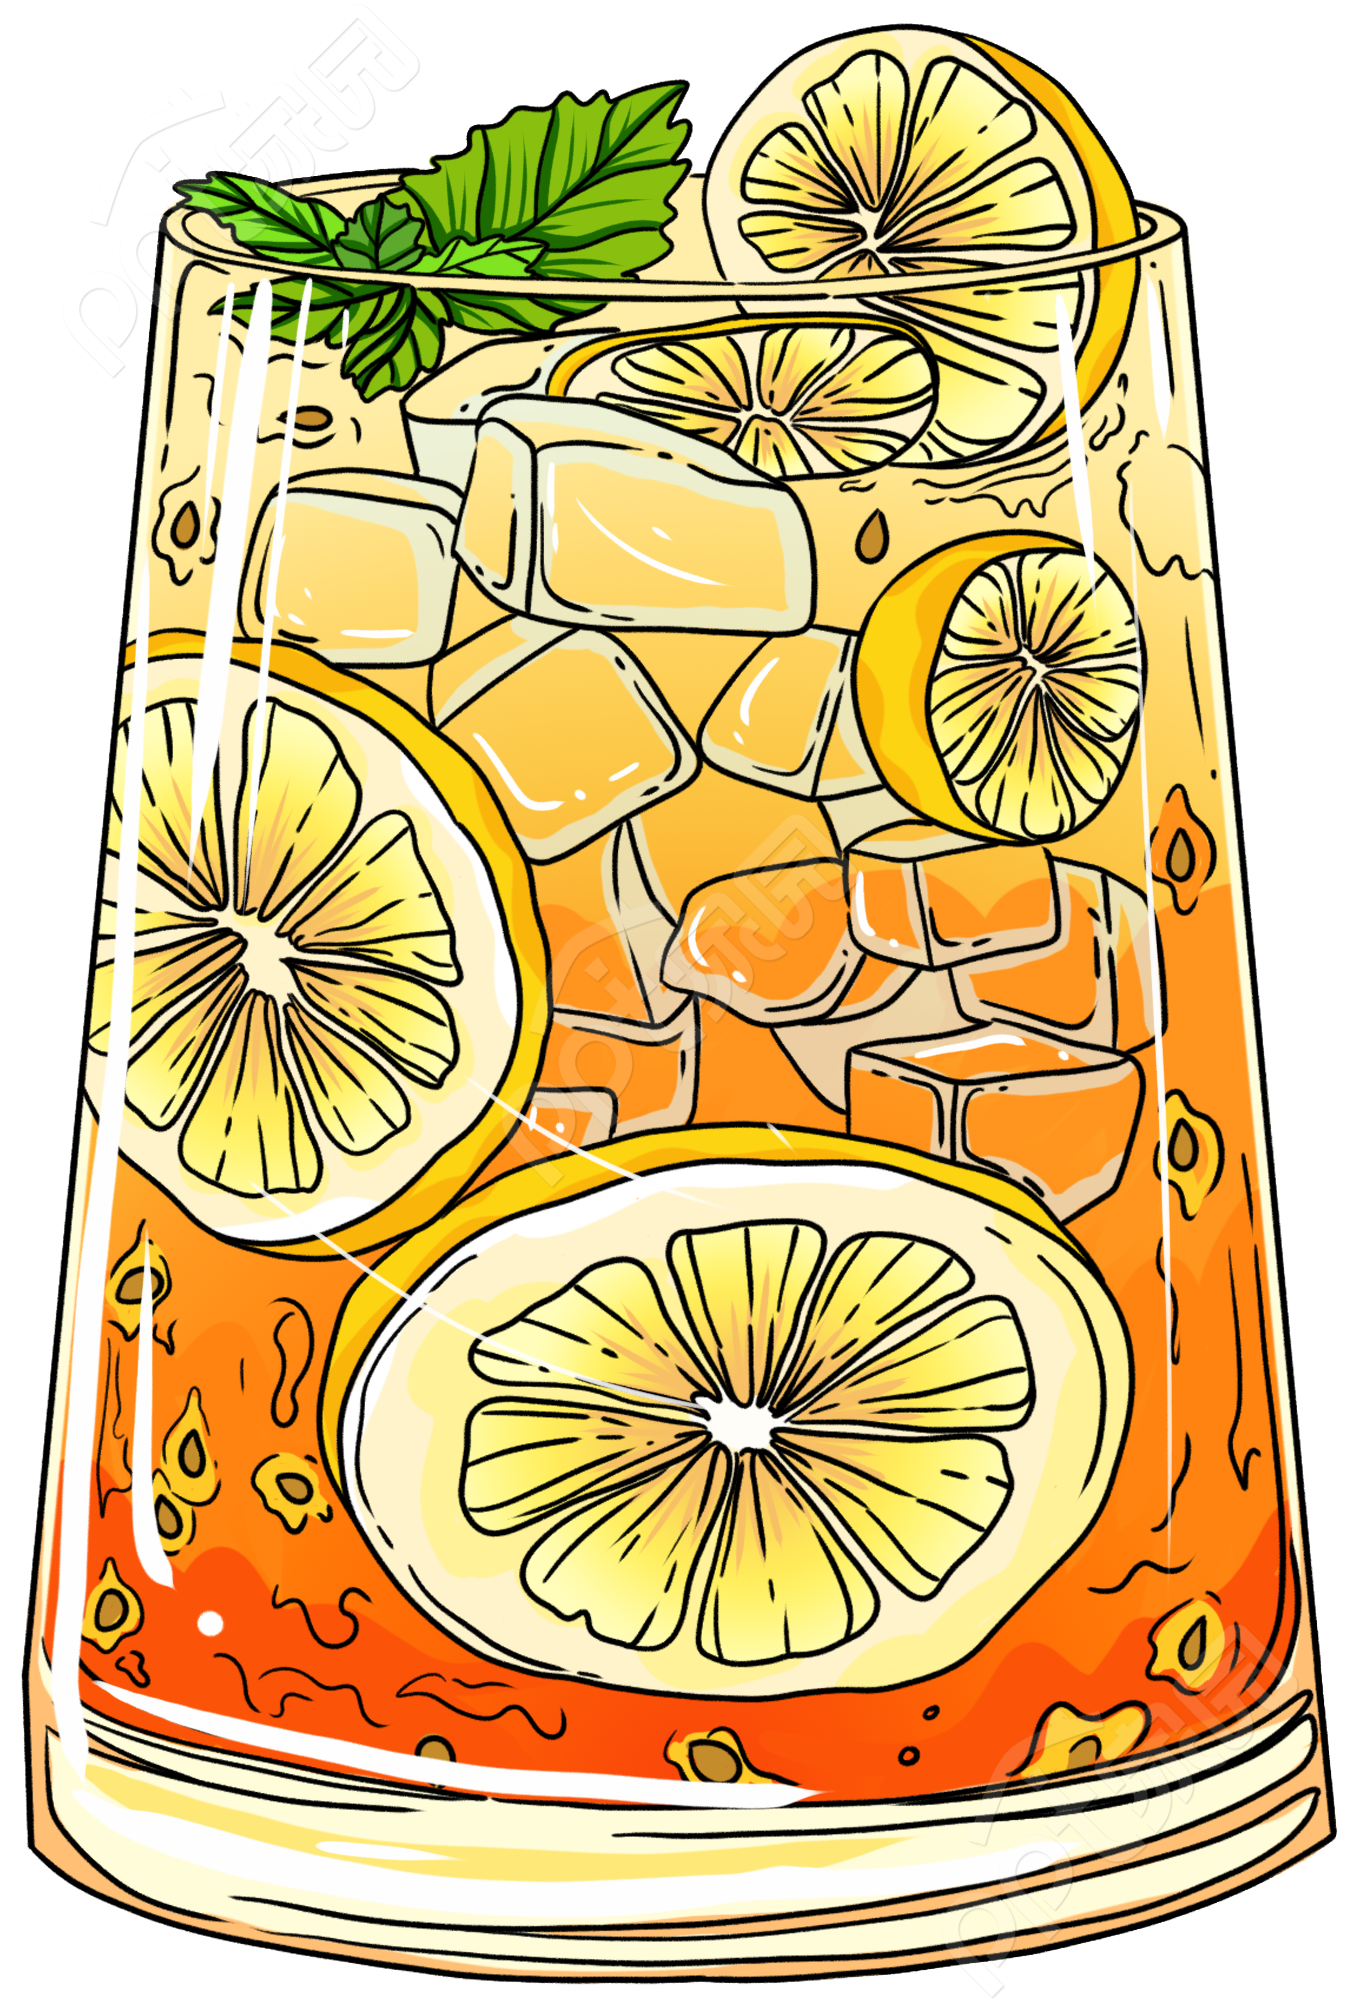 夏季清凉饮品柠檬水新品上市矢量图片素材